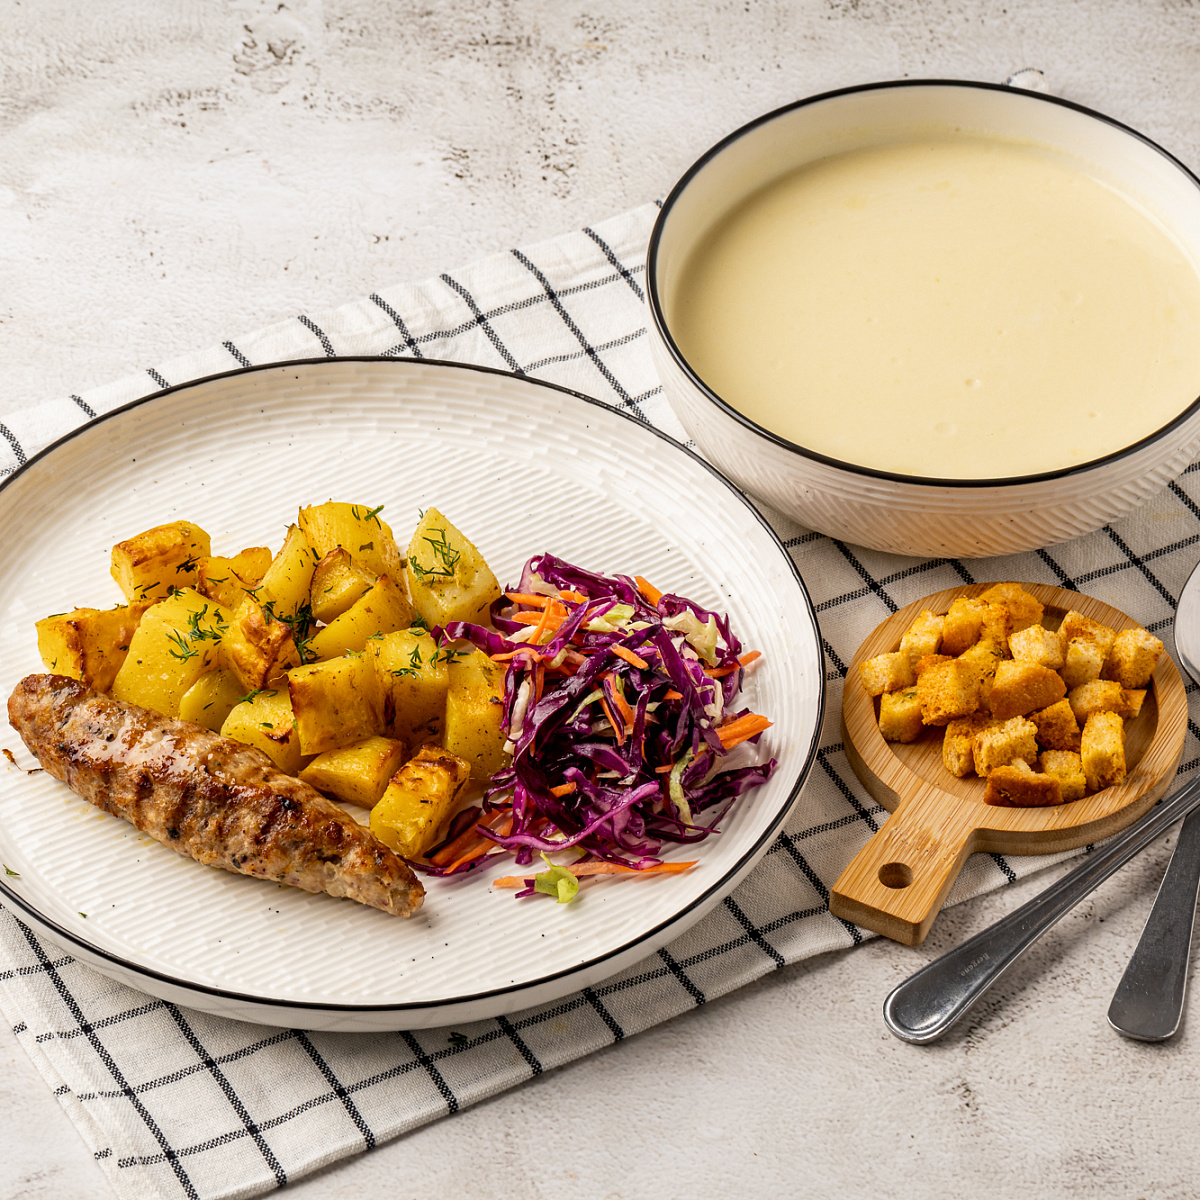 Люля индейка + картофель запеченный + салат коул слоу + сырный суп + сухарики